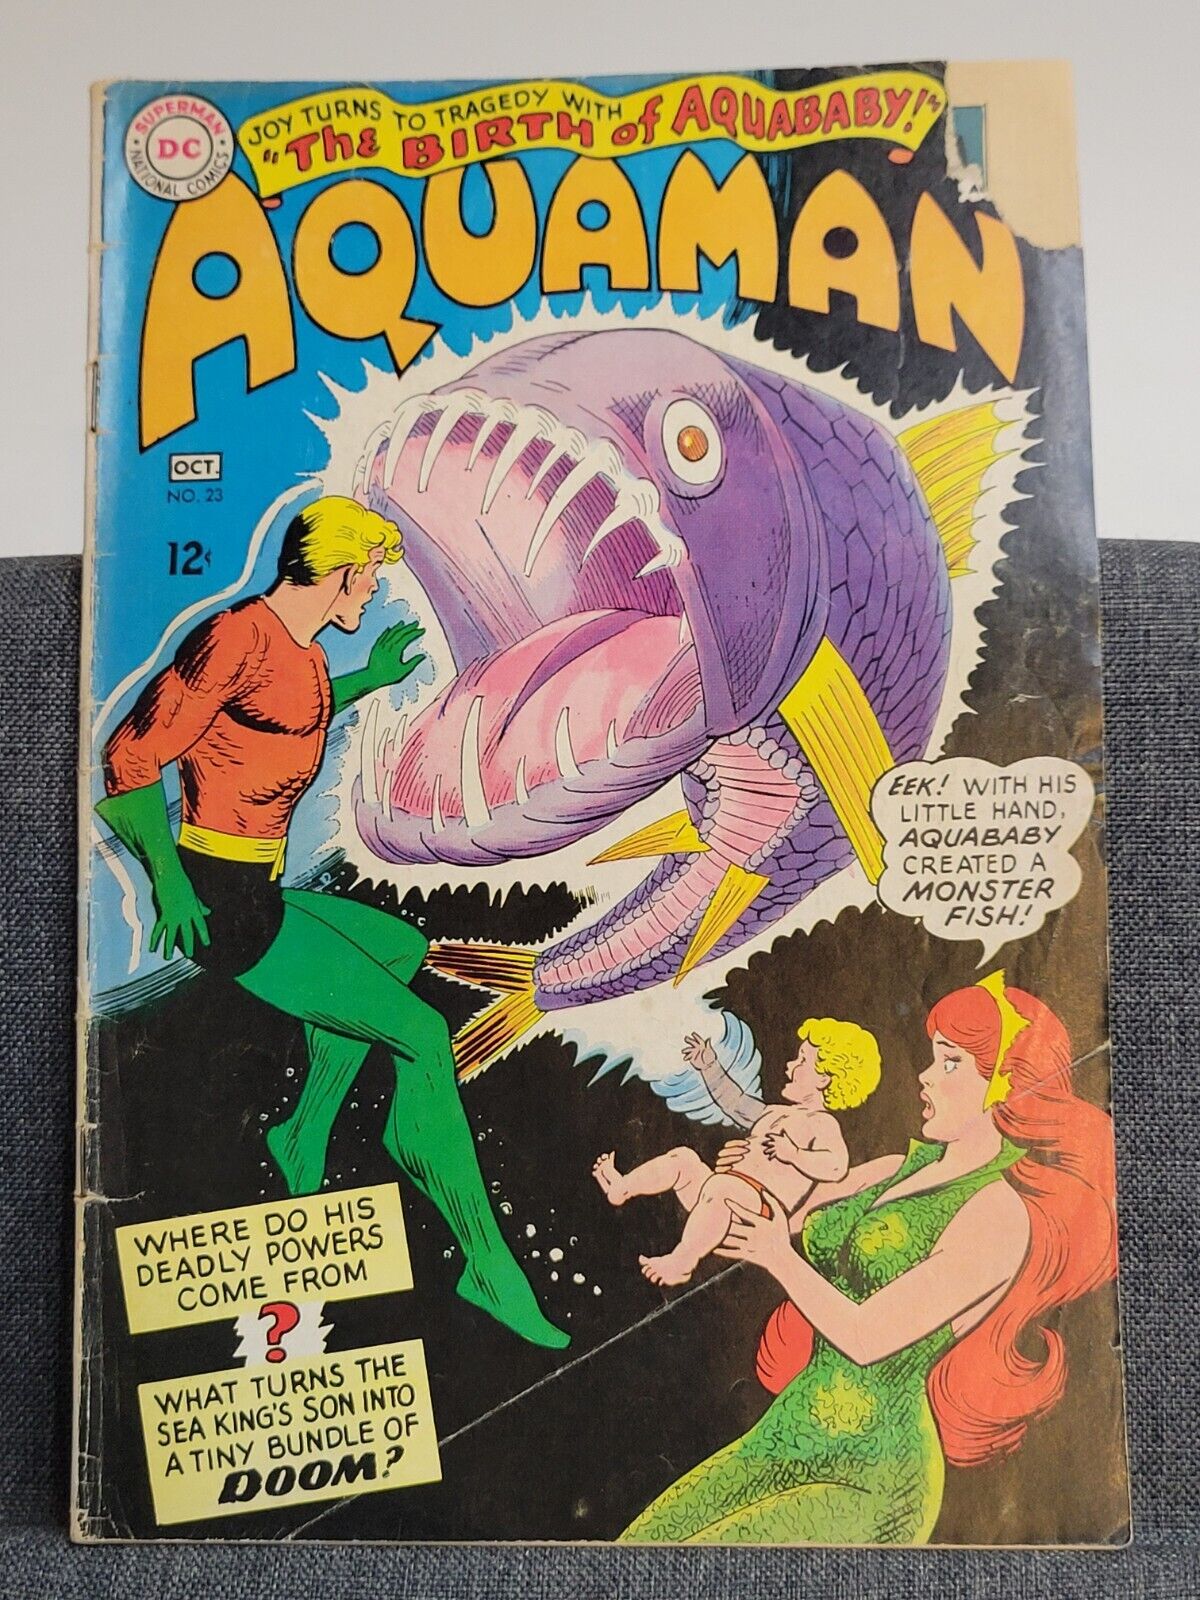 Aquaman #23 Comic Book  1st App Aquababy DC - Torn Cover 1965 Vintage 